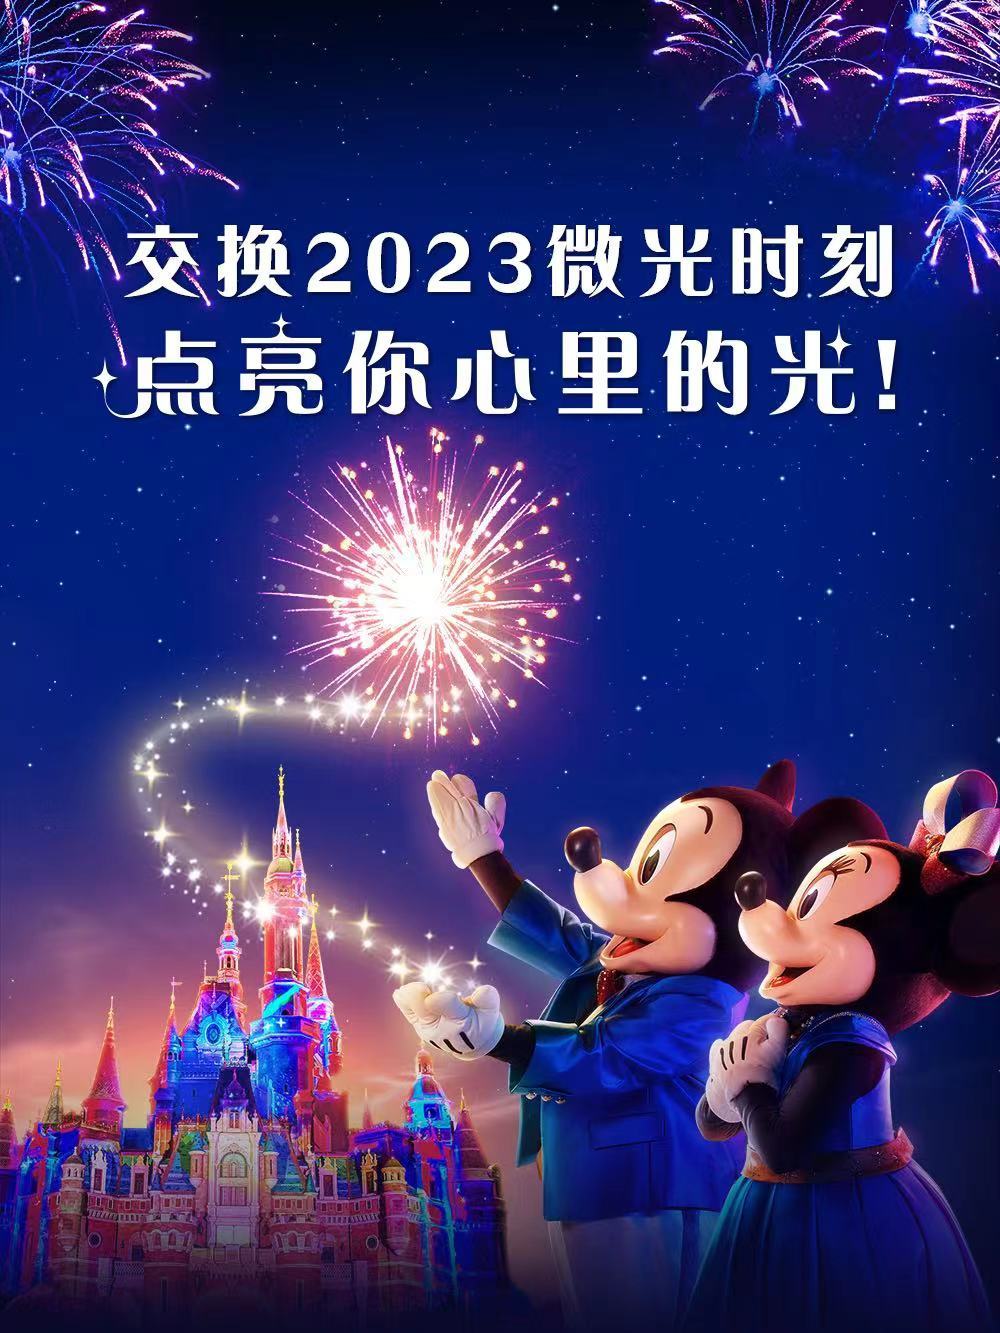 上海迪士尼除夕夜的「点亮新一年」特别夜间演出取消烟花效果。